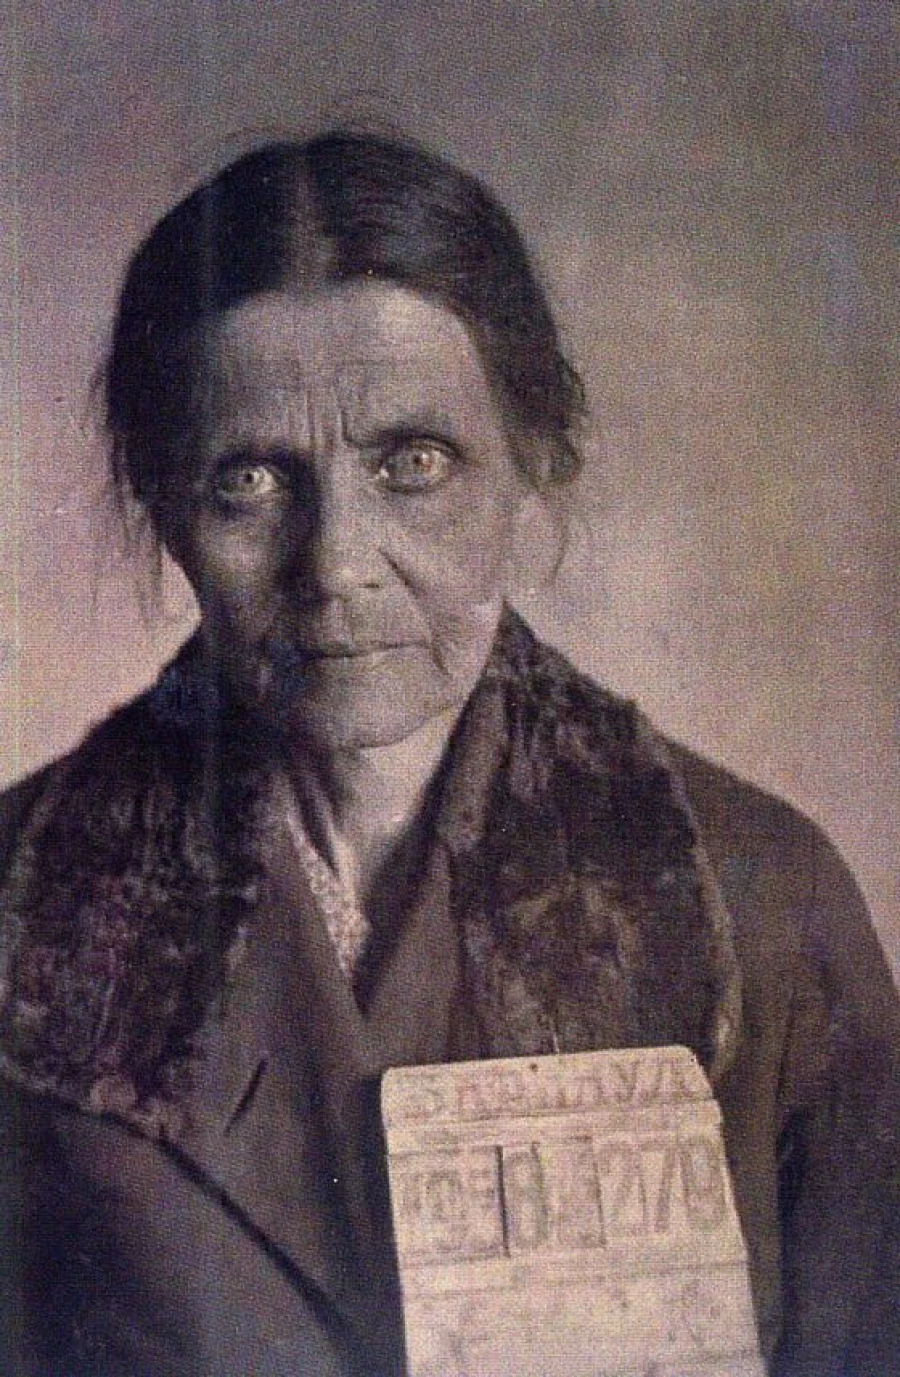 Марцинковская Августа, жена Антония Марцинковского, дата фото не указана.